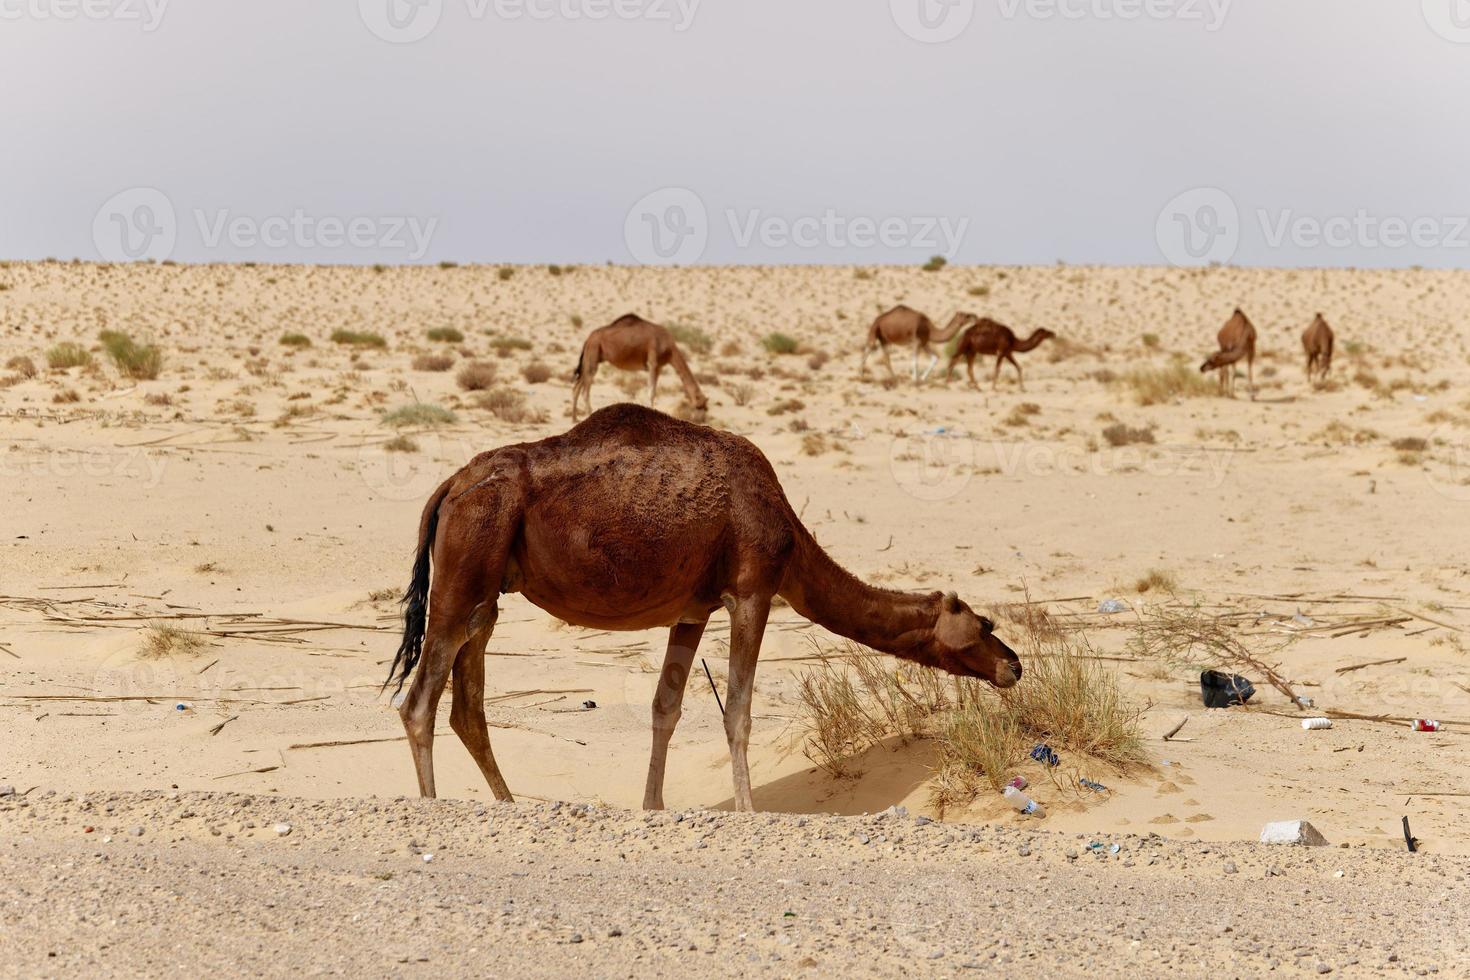 kamelen in de woestijn aan het eten bladeren van de boom. wild dieren in hun natuurlijk leefgebied. wildernis en dor landschappen. reizen en toerisme bestemming in de woestijn. safari in Afrika. foto